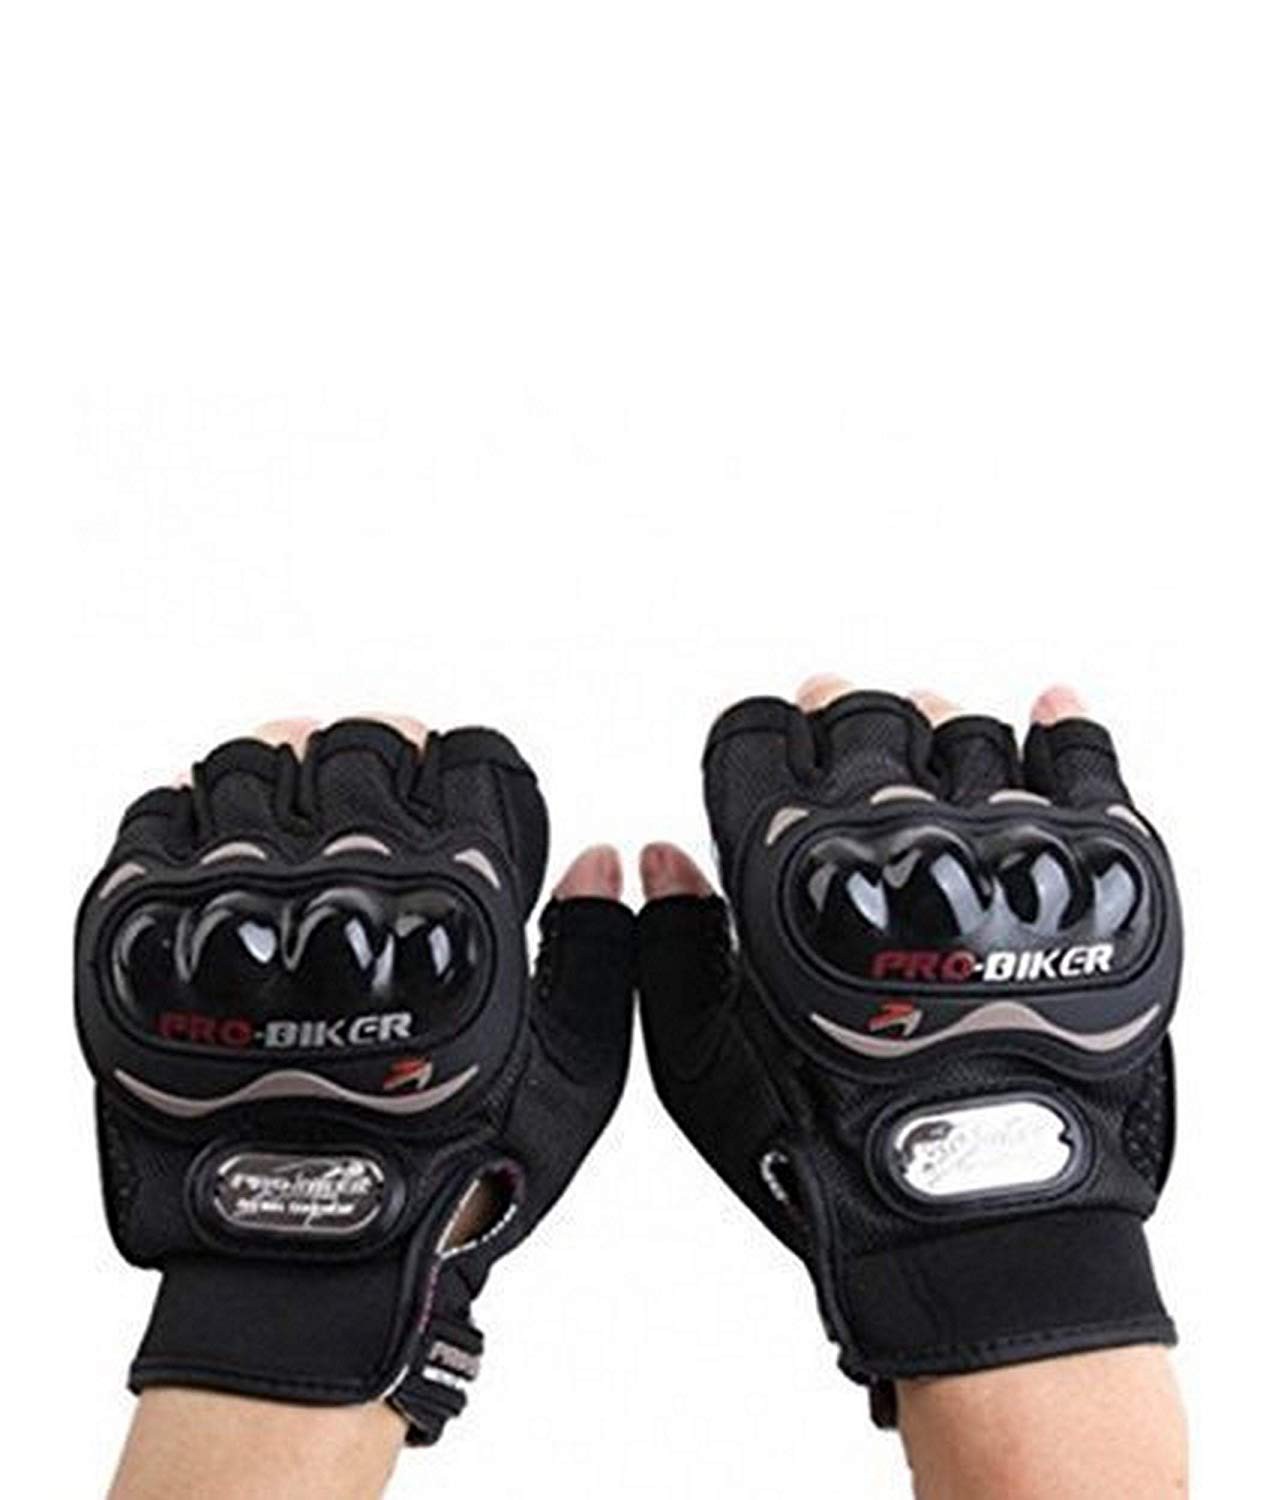 probiker-leather-half-finger-motorcycle-gloves-black